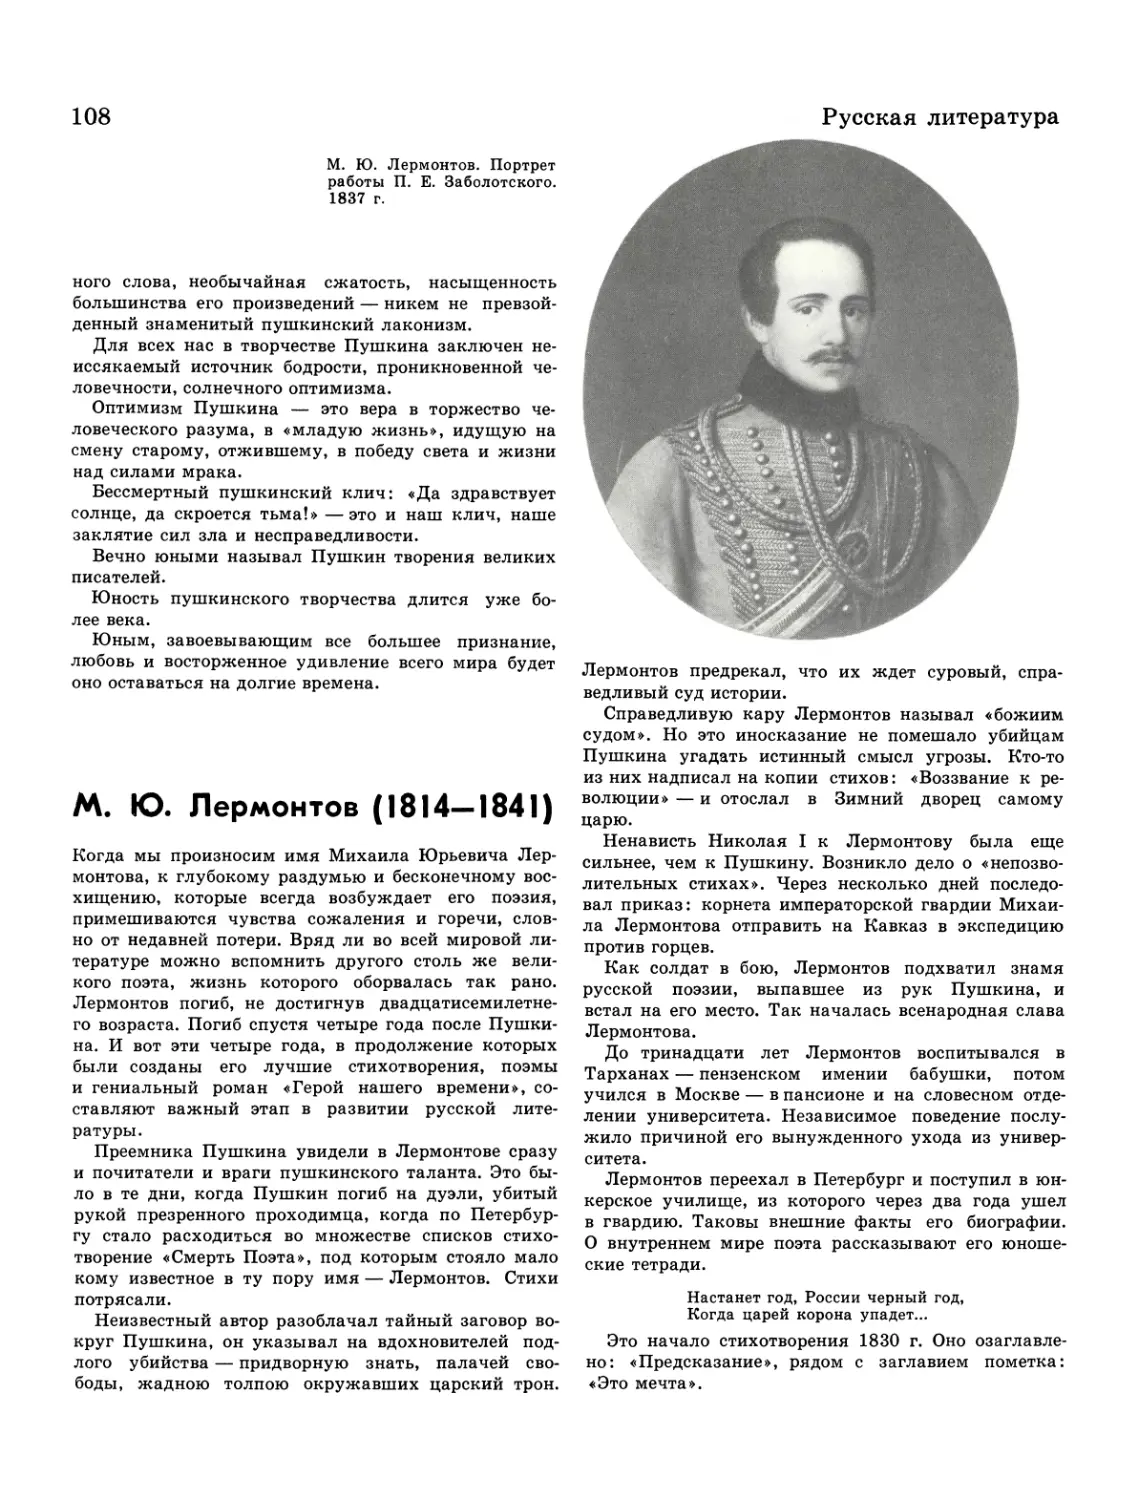 М. Ю. Лермонтов